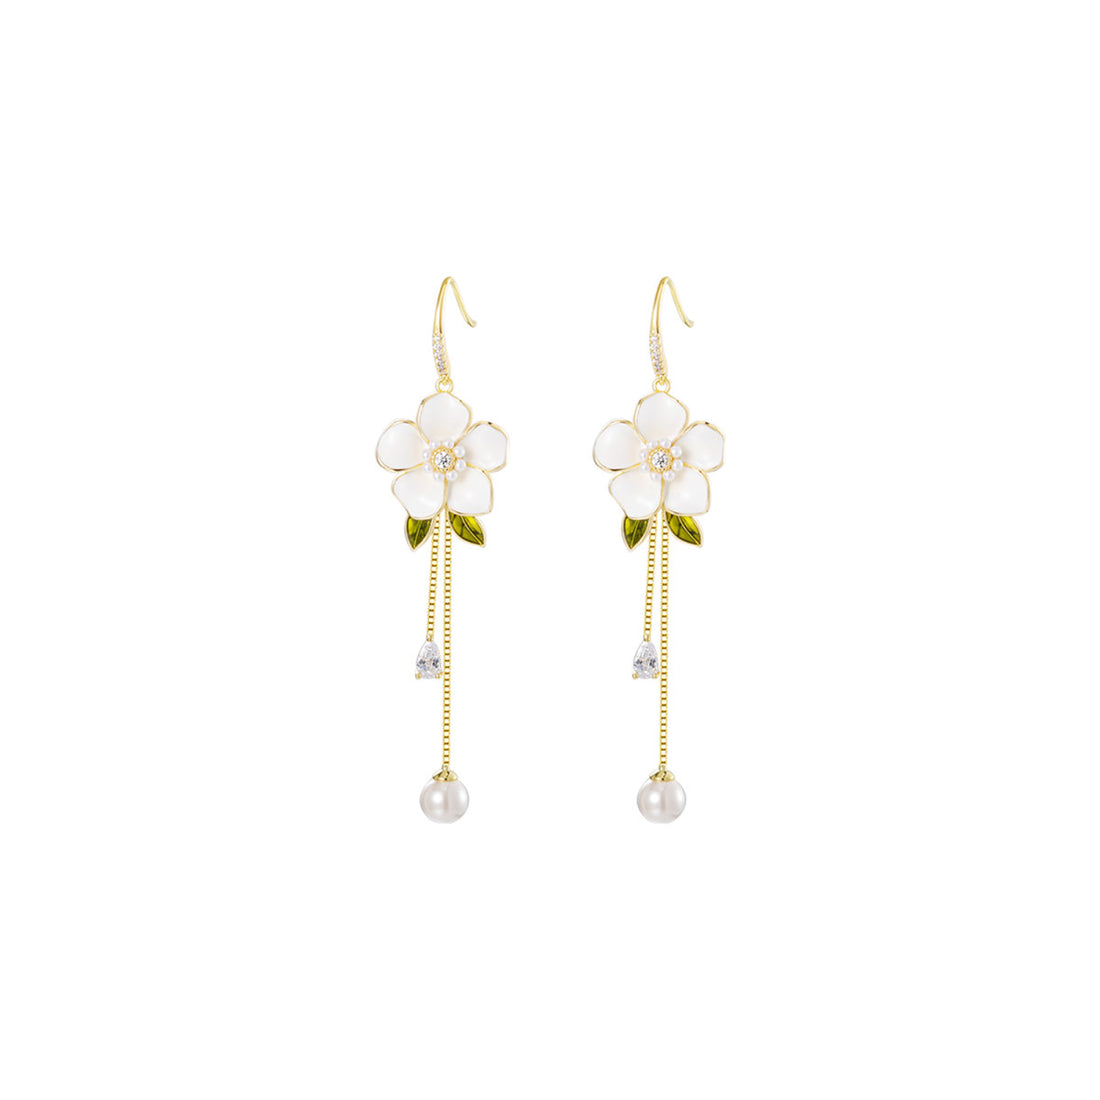 Aromatic Camellia Tassle Gold Earrings